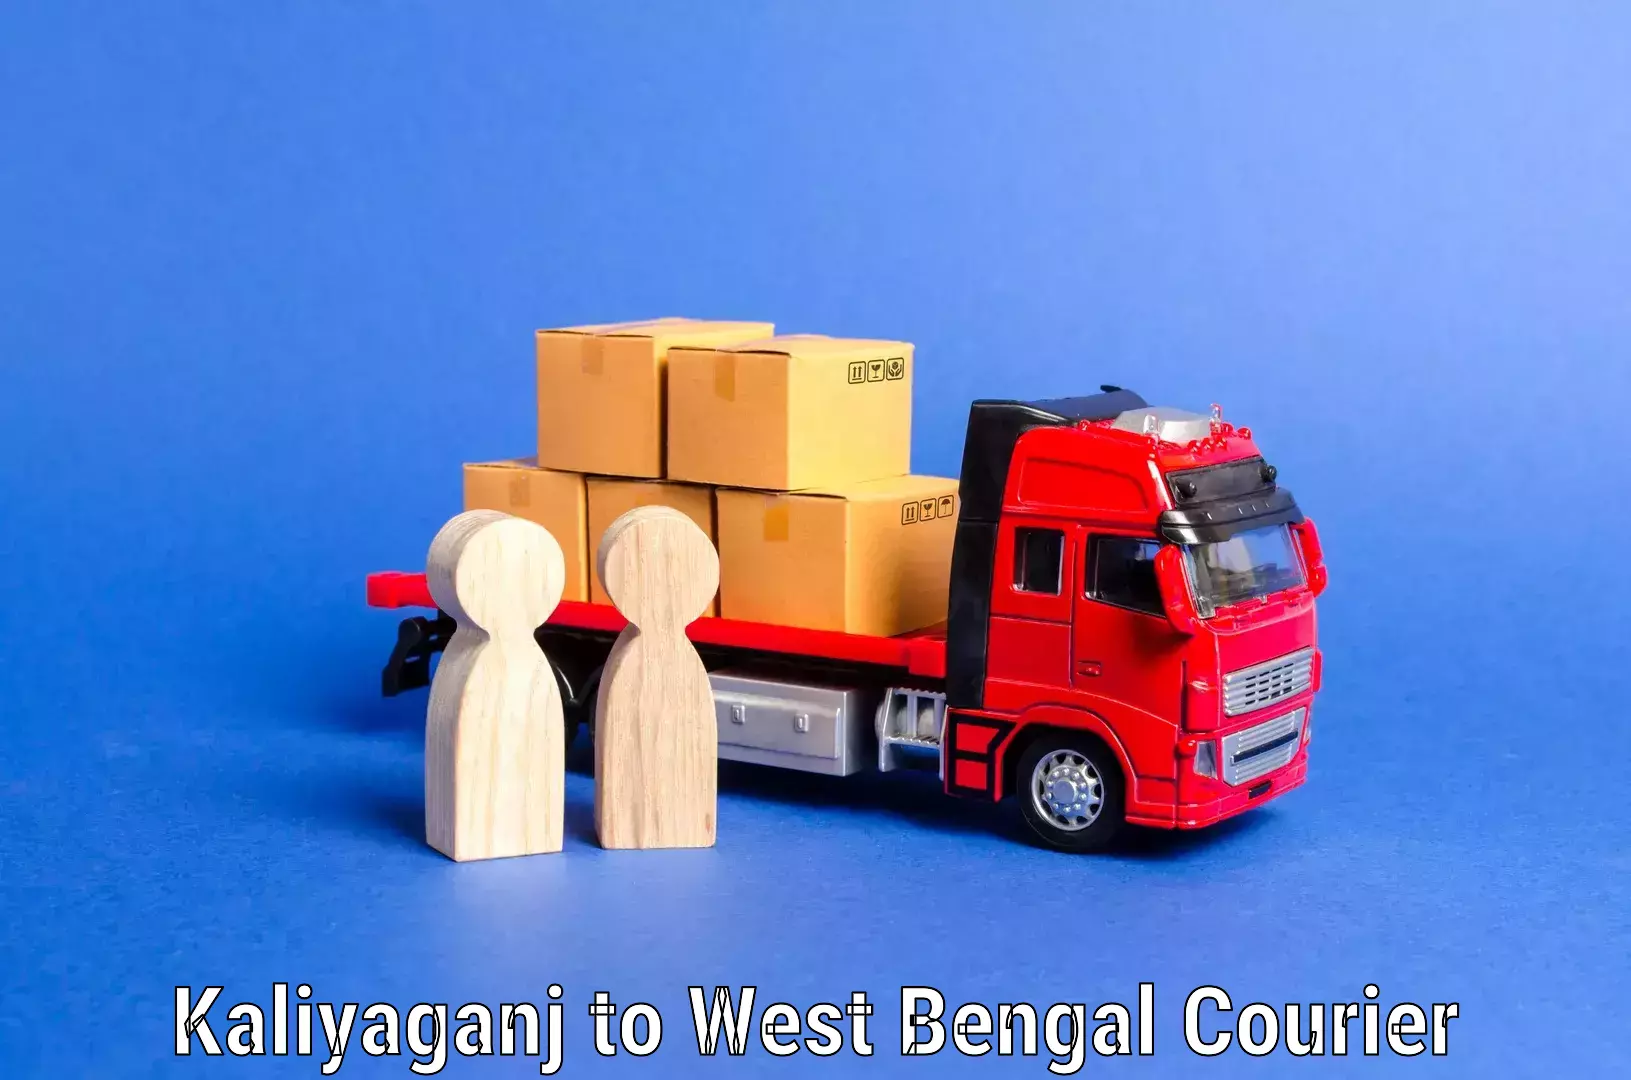 Stress-free furniture moving in Kaliyaganj to West Bengal